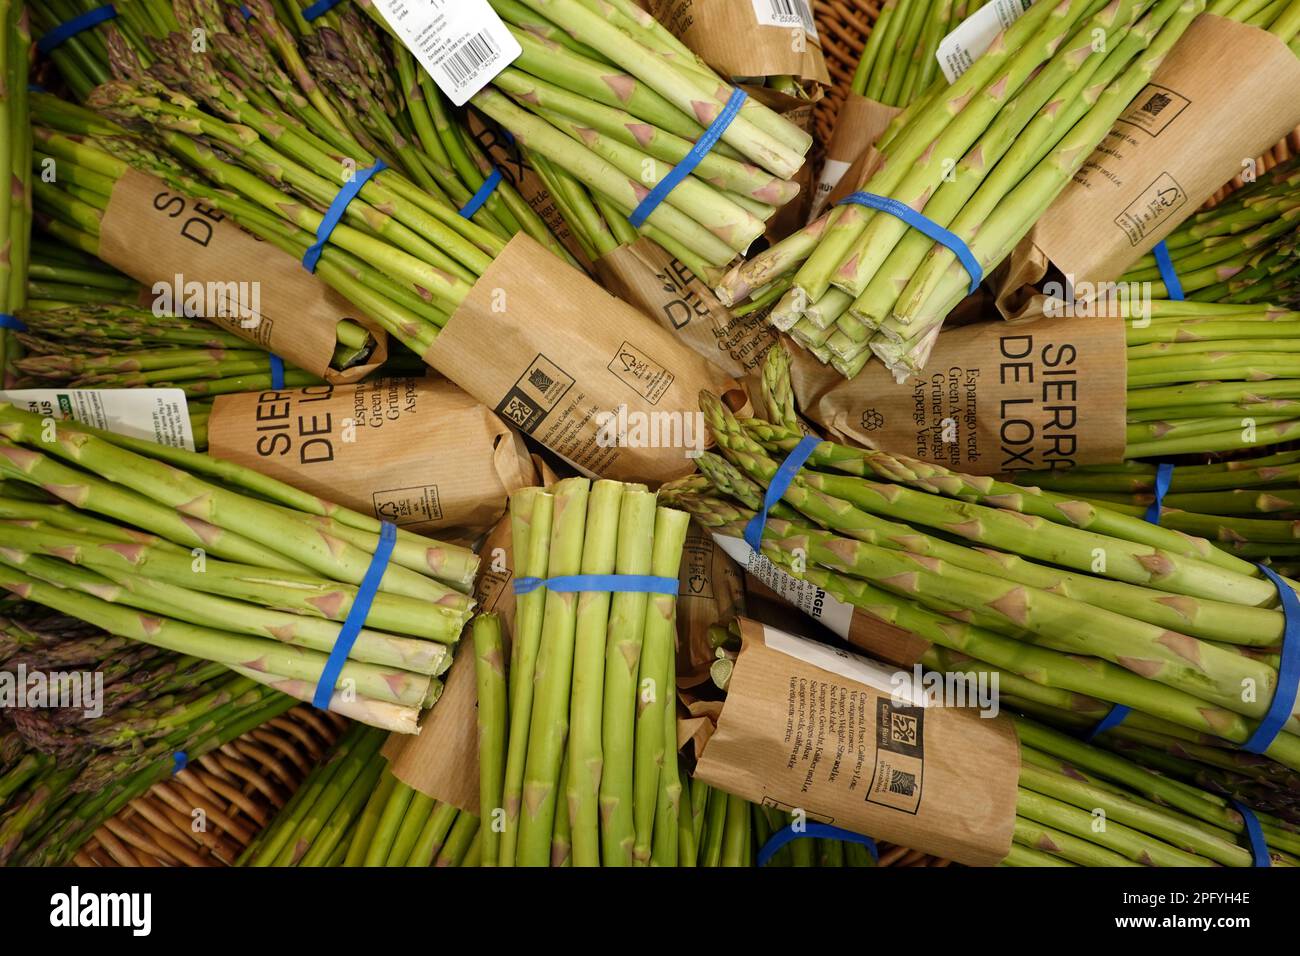 Importierter Grüner Spargel in einem Lebensmittelgeschäft Foto Stock